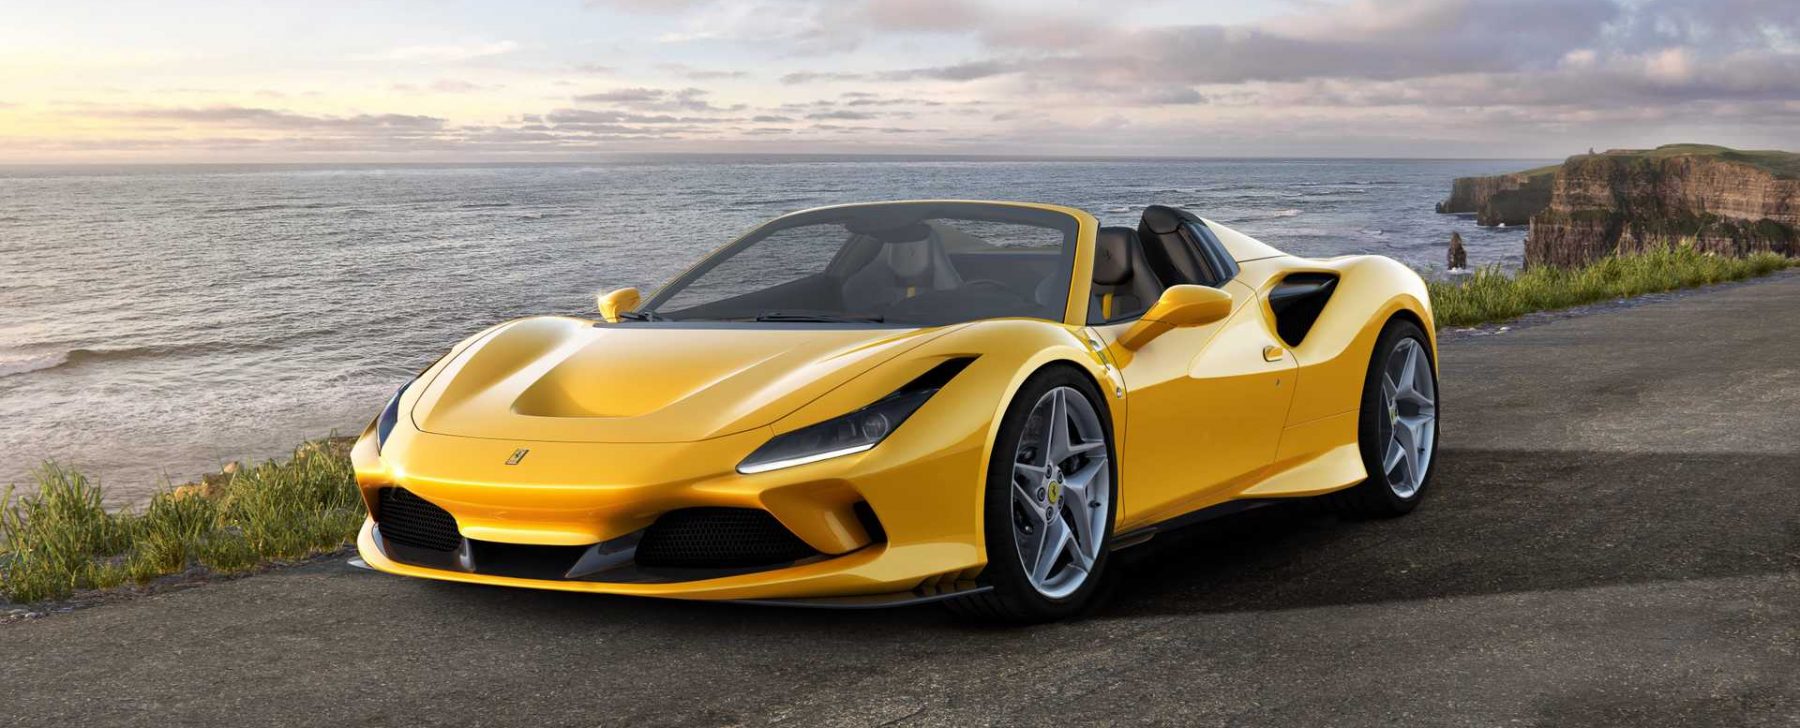 Ferrari Alquiler venta renting coches de lujo en Ibiza rent a car